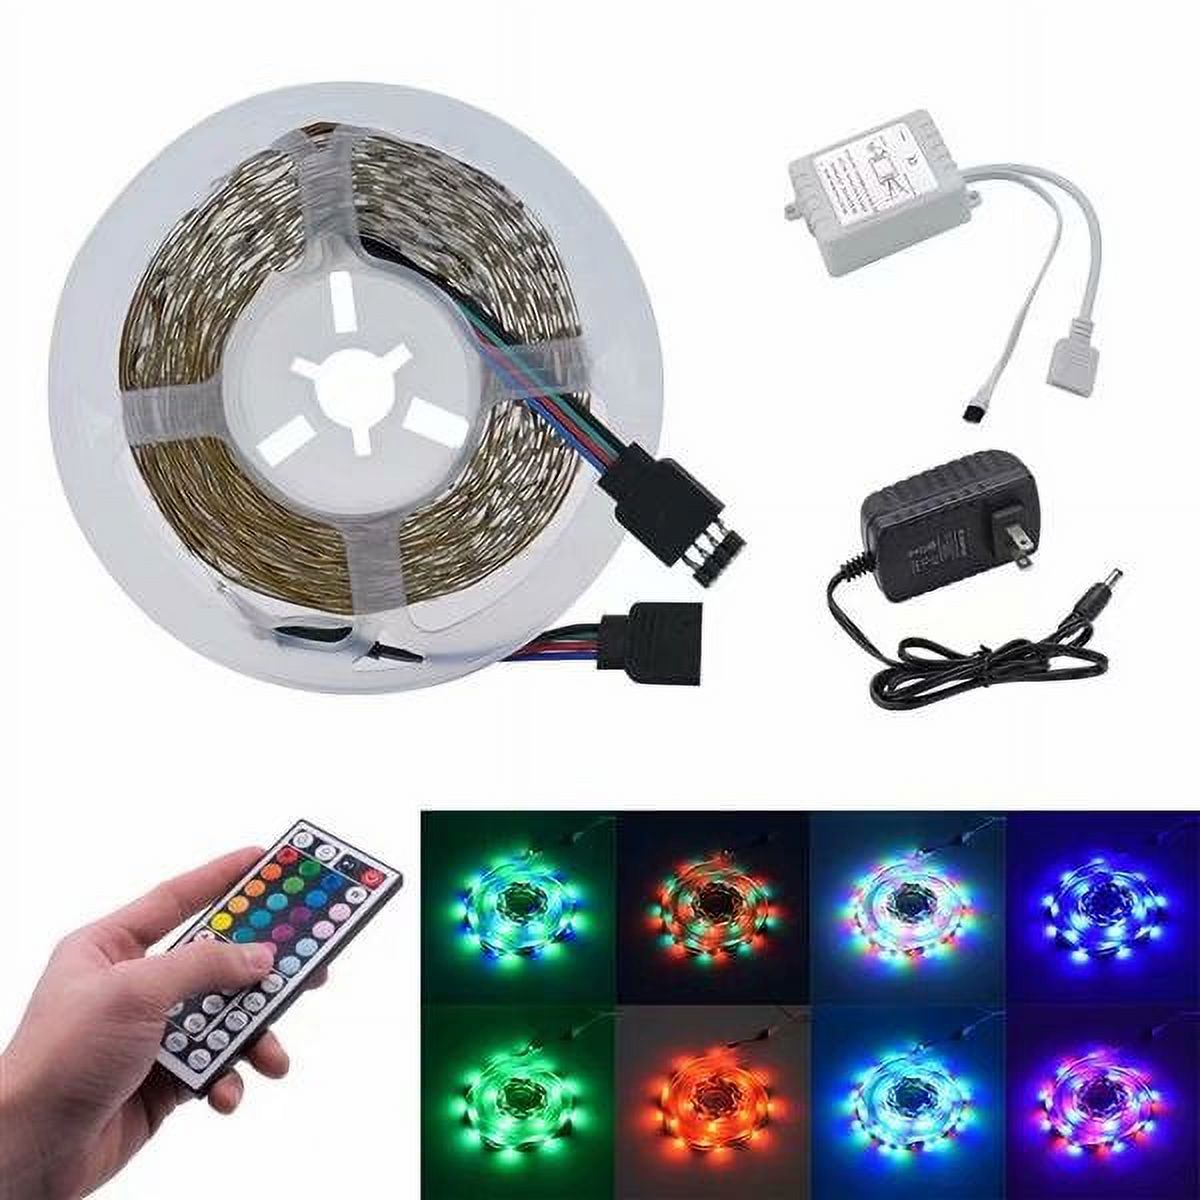 RGB LED Strip Lights with Remote, LED Lights Strip, LED Night Light, LED Christmas Lights, LED Rope Lights, LED Tape Light - image 1 of 9